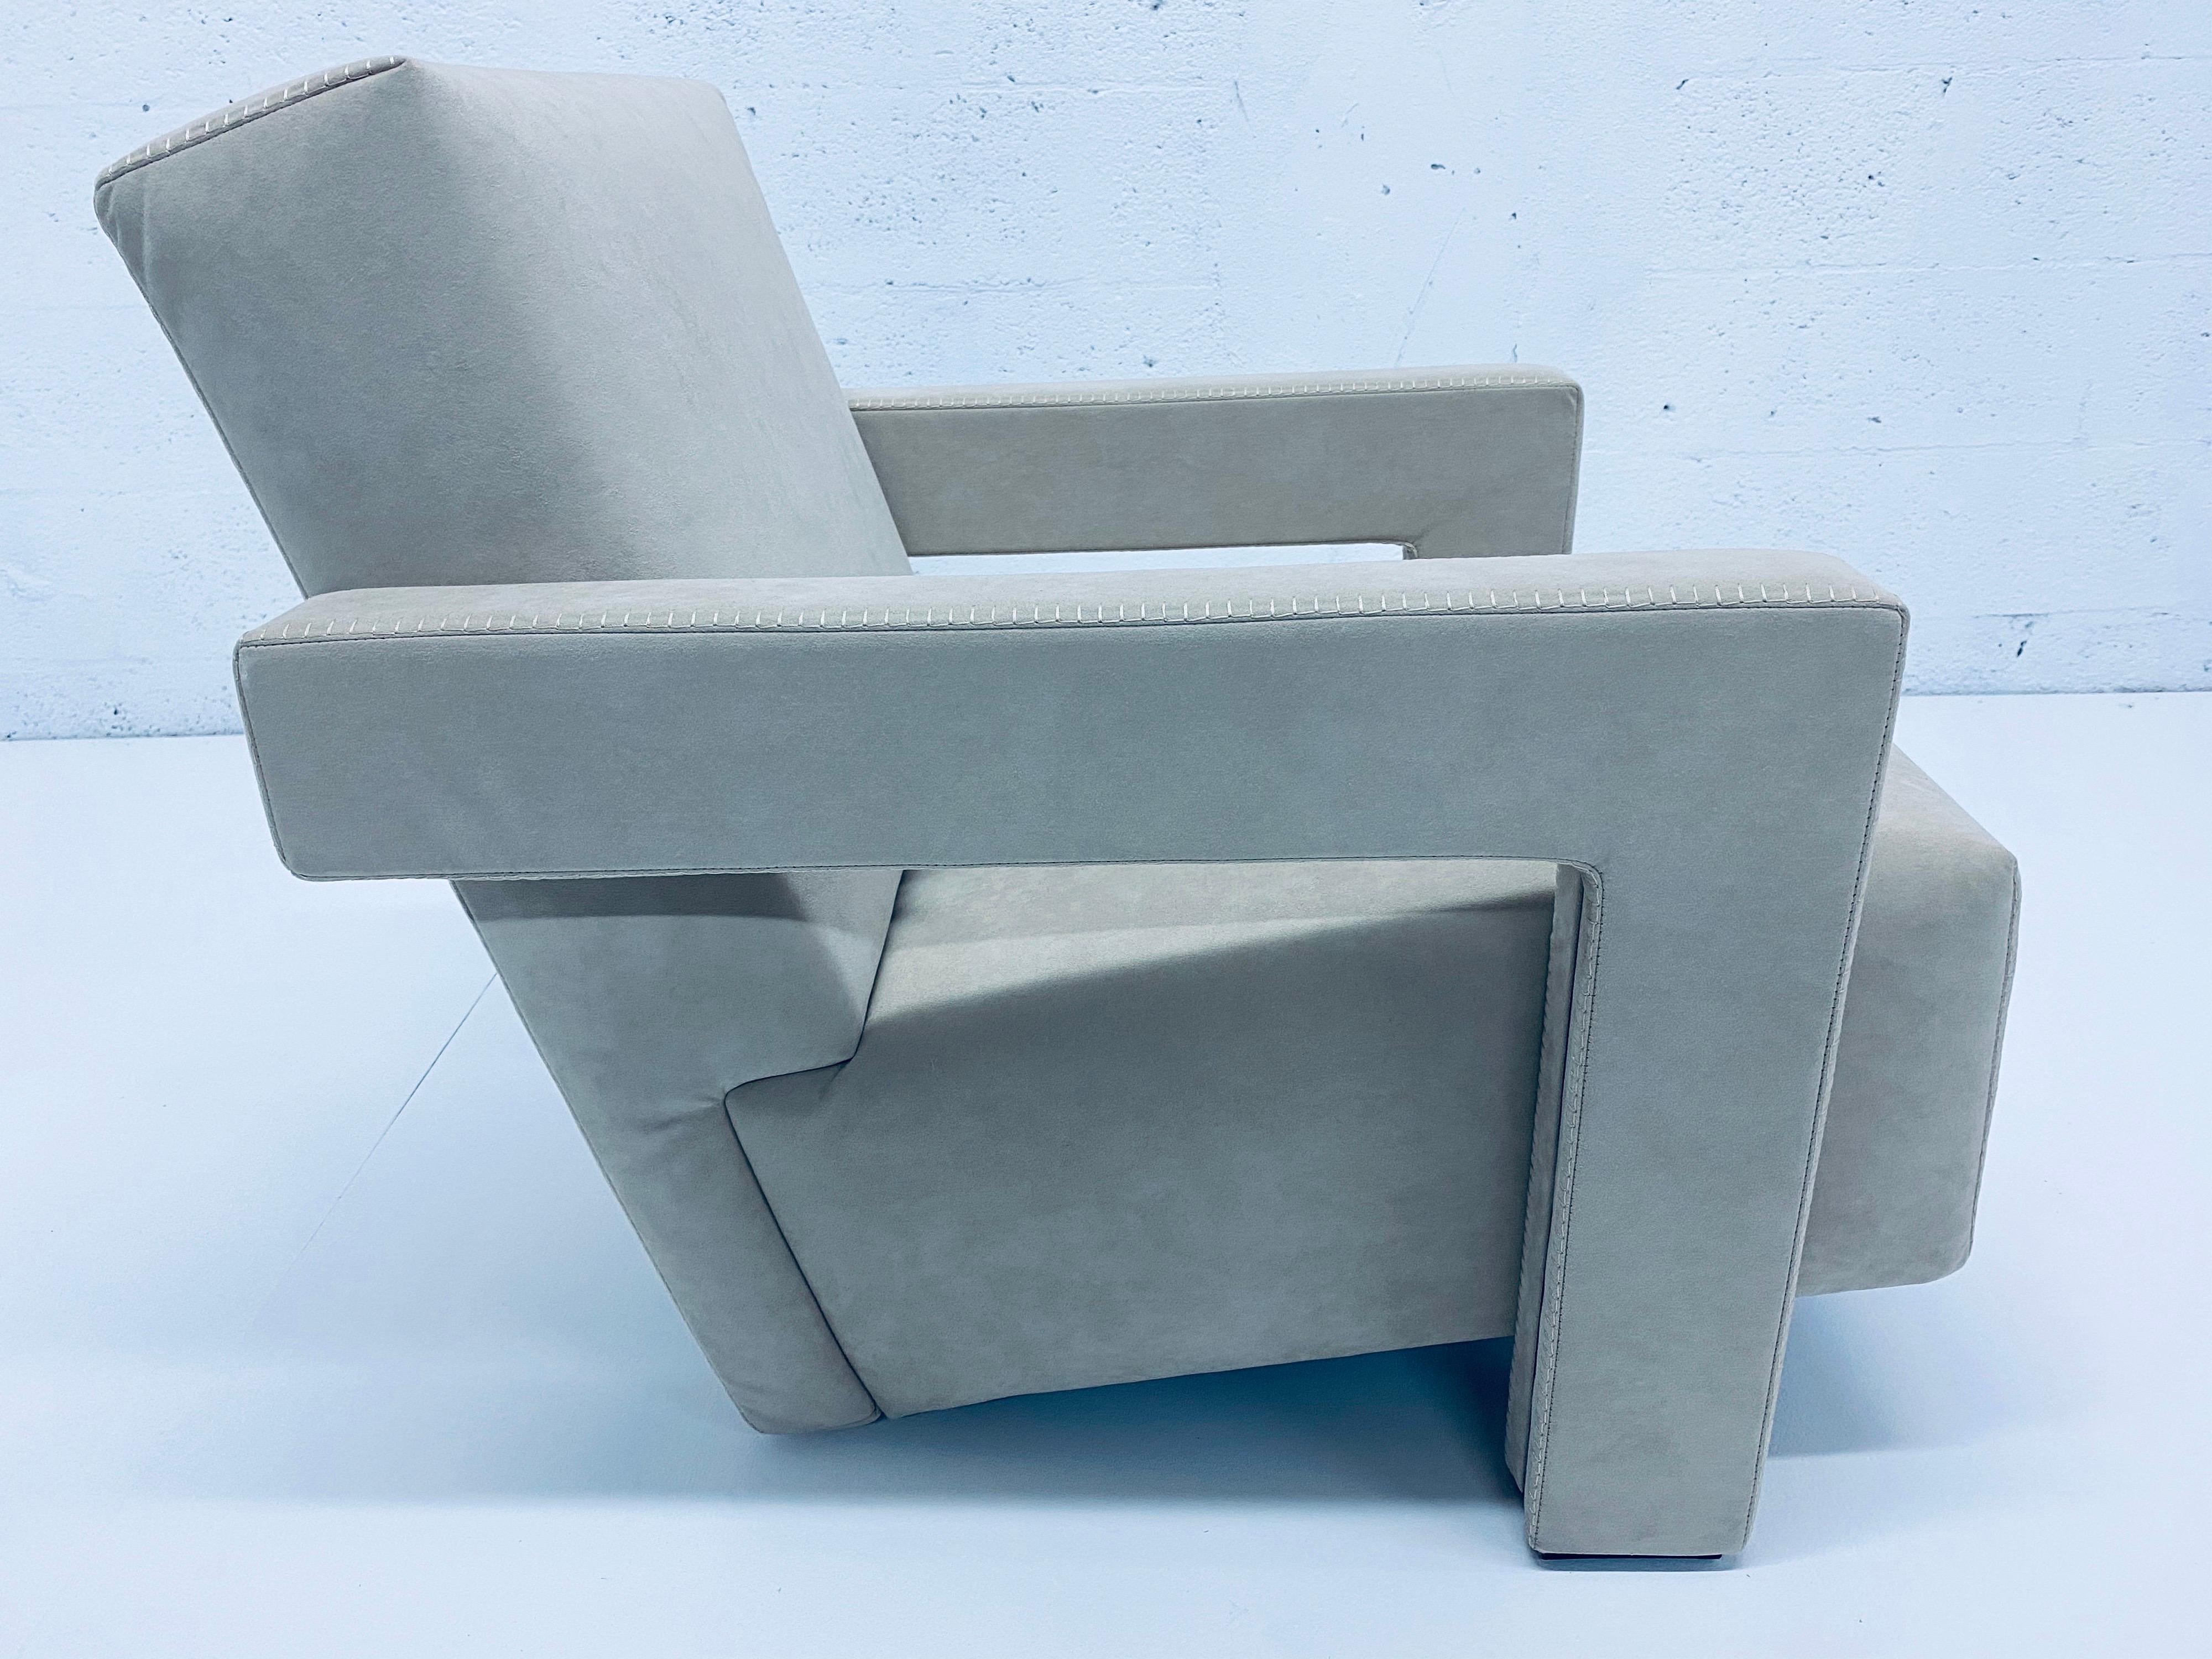 Italian Gerrit Rietveld “Utrecht” Lounge Chair for Cassina